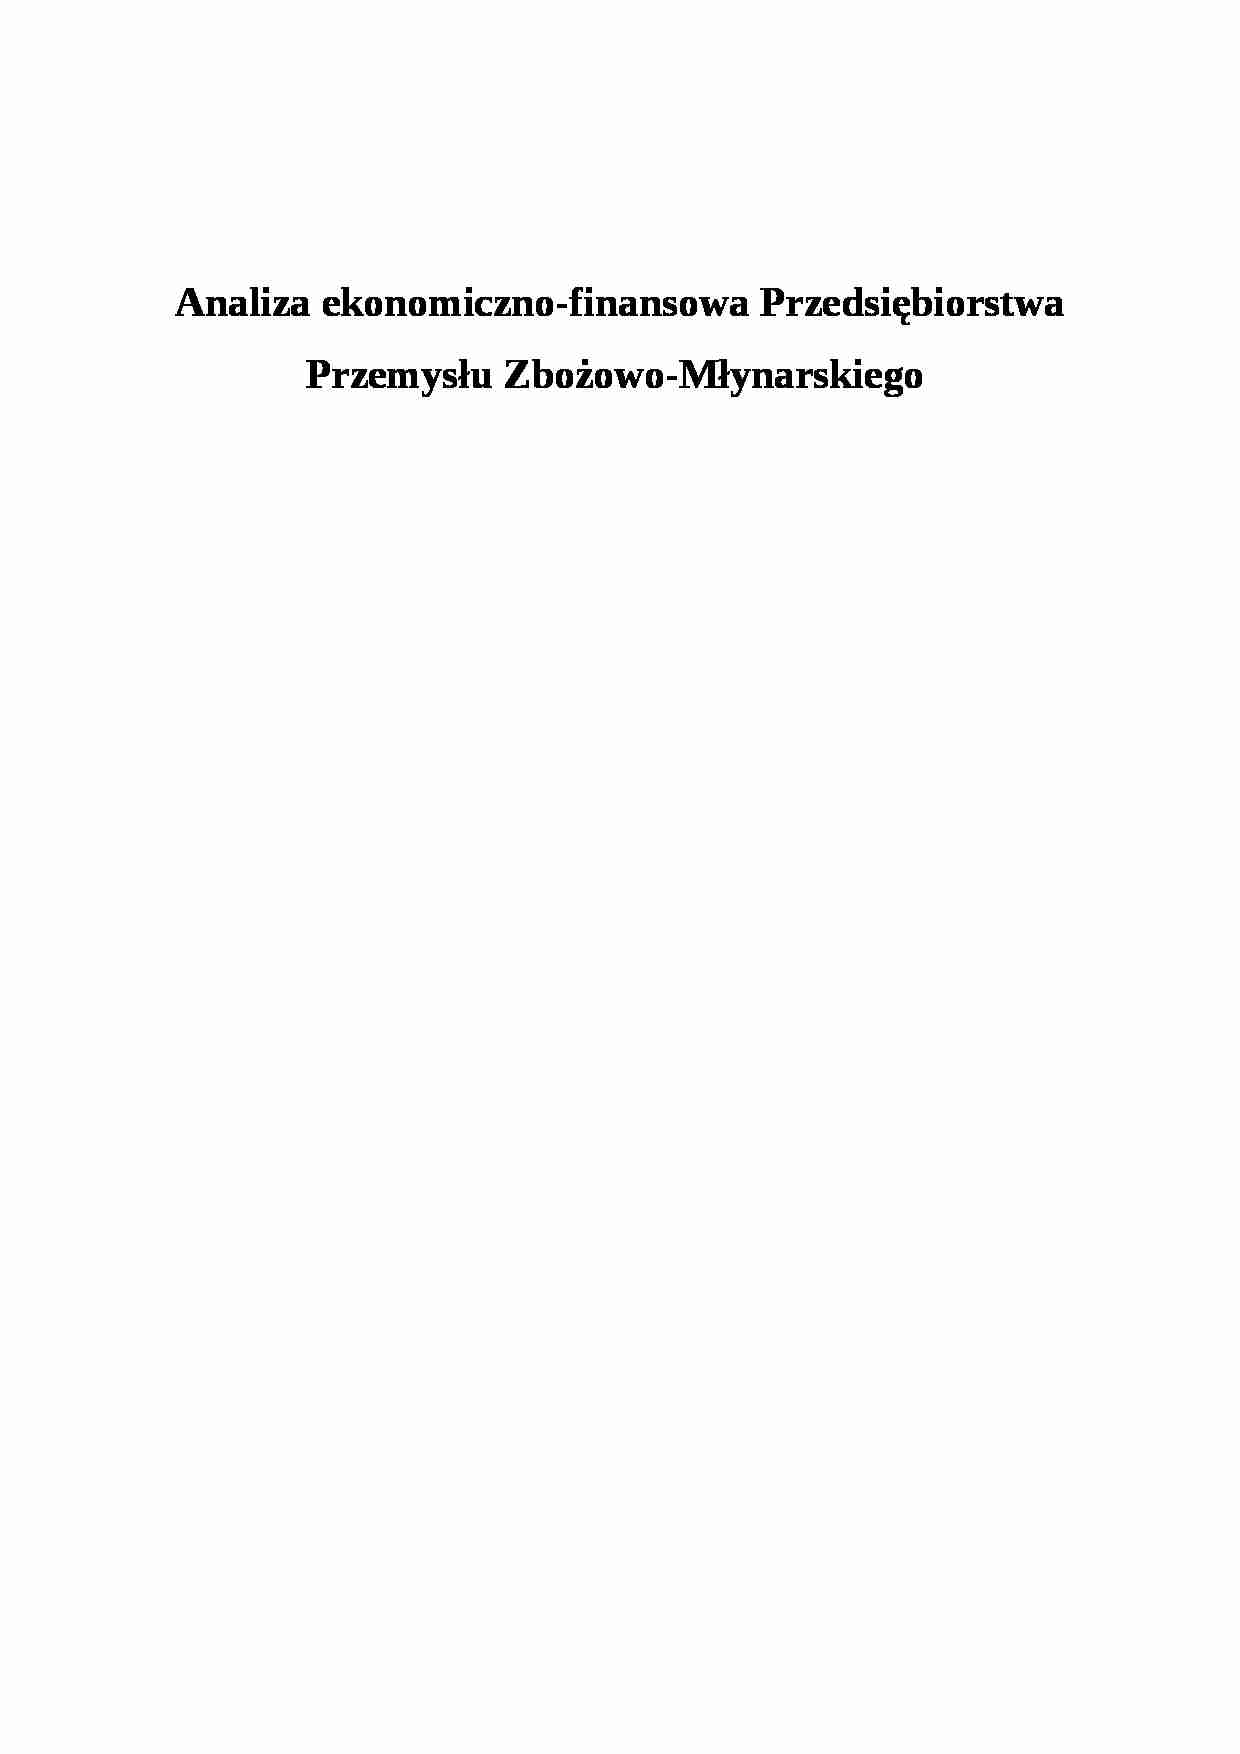 Analiza ekonomiczno-finansowa PPZM - analiza - strona 1